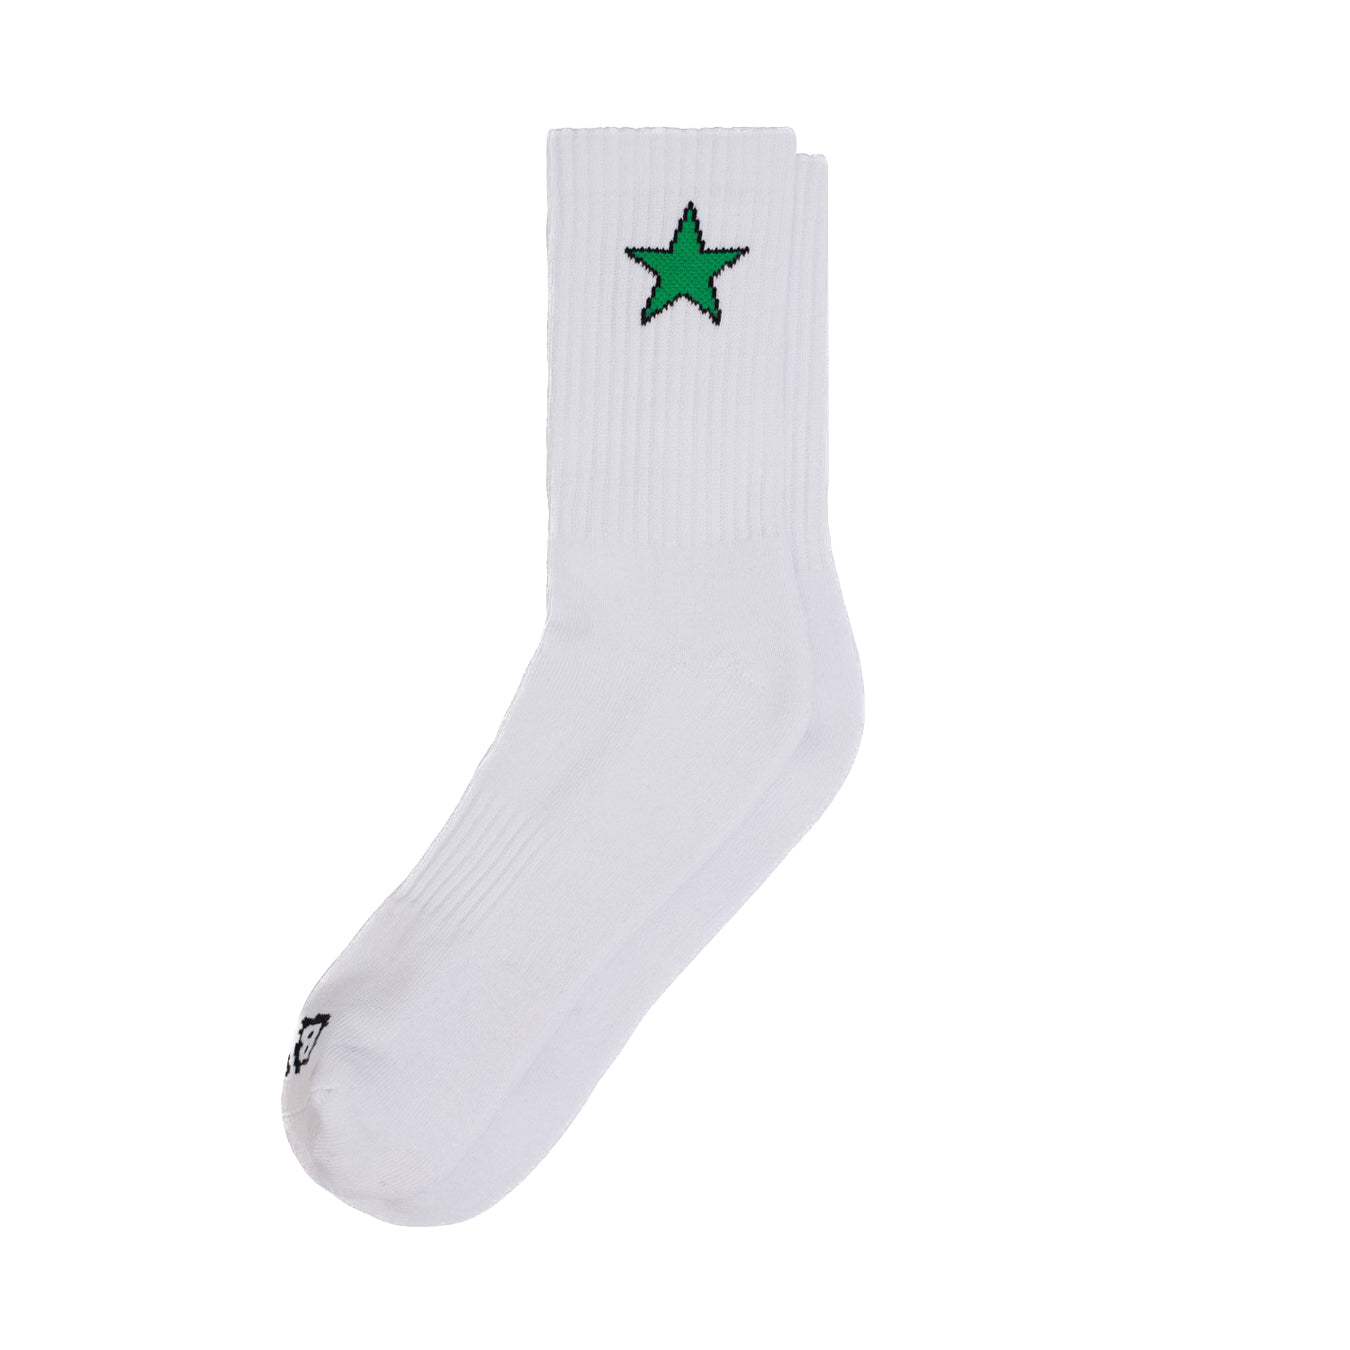 Star Socks - White / Green